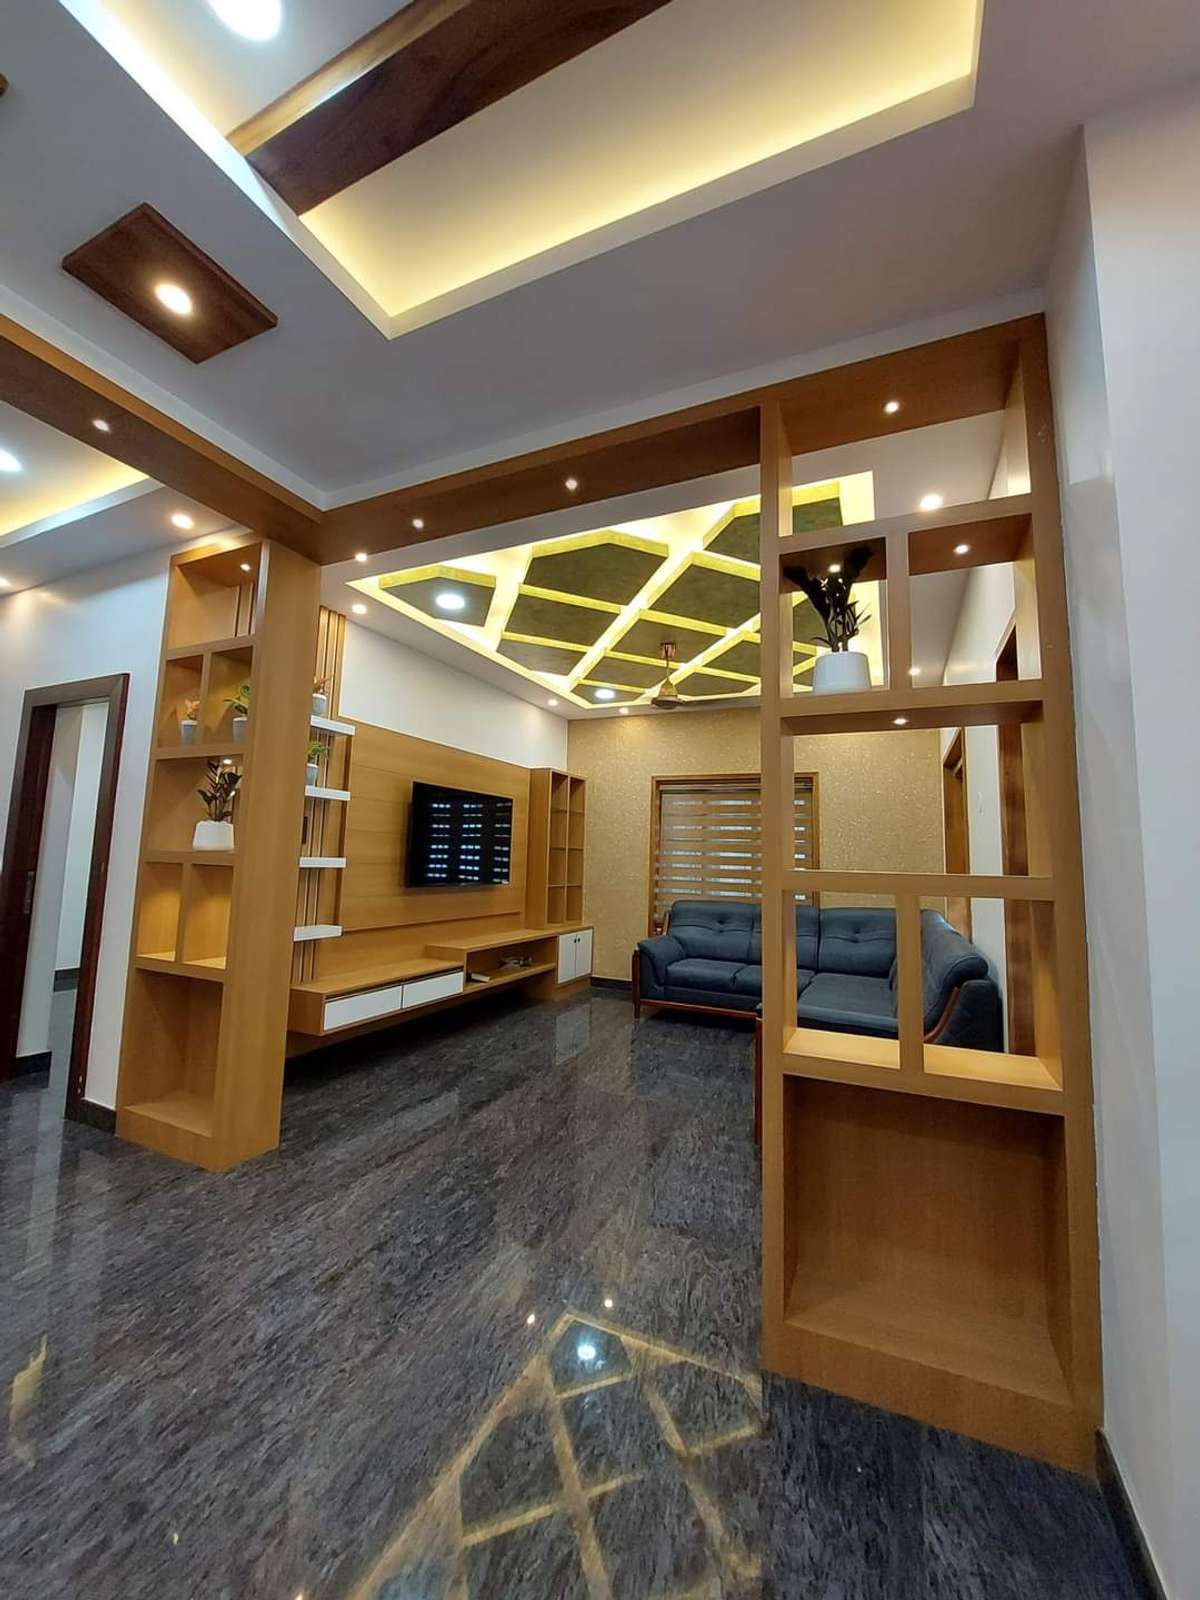 Designs by Interior Designer ajith RT INTERIORS, Thiruvananthapuram | Kolo